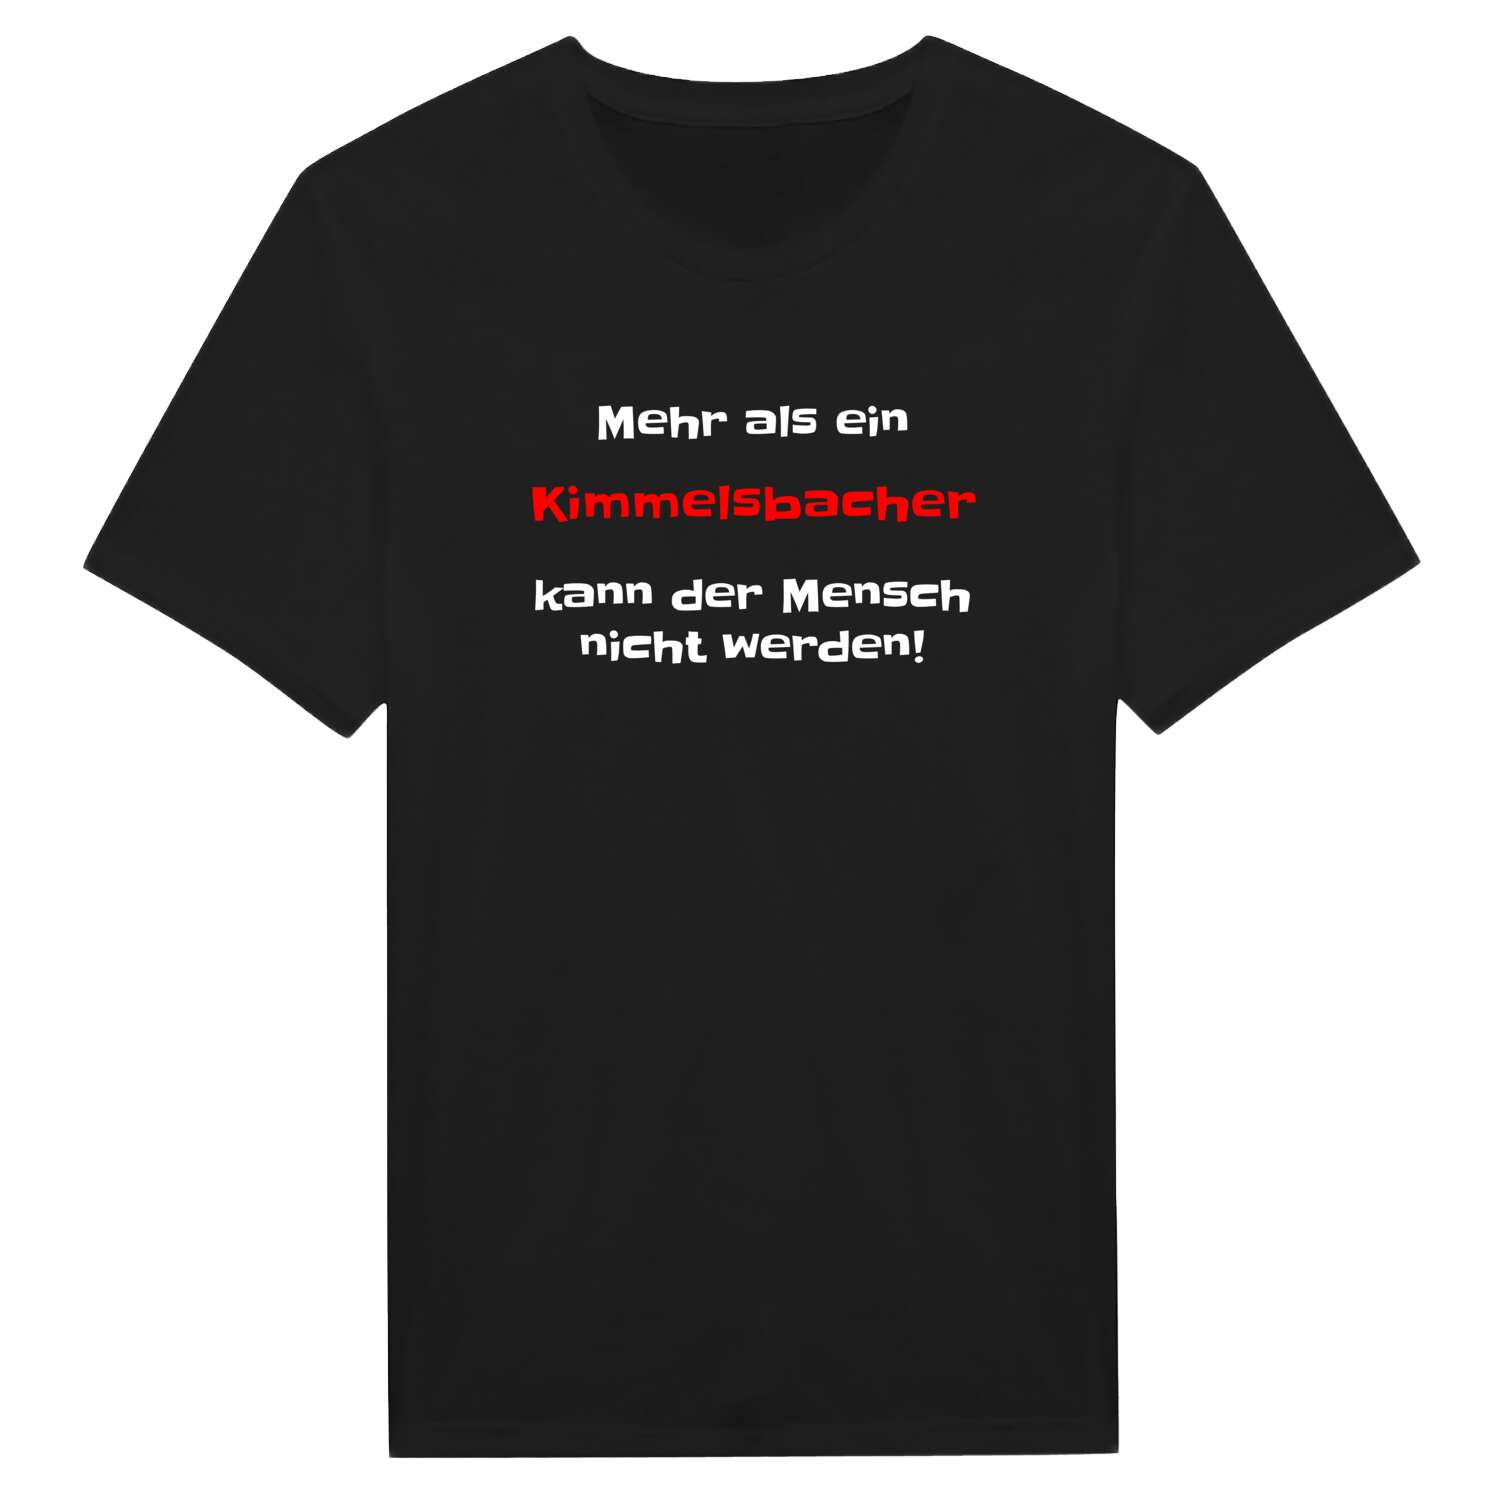 Kimmelsbach T-Shirt »Mehr als ein«